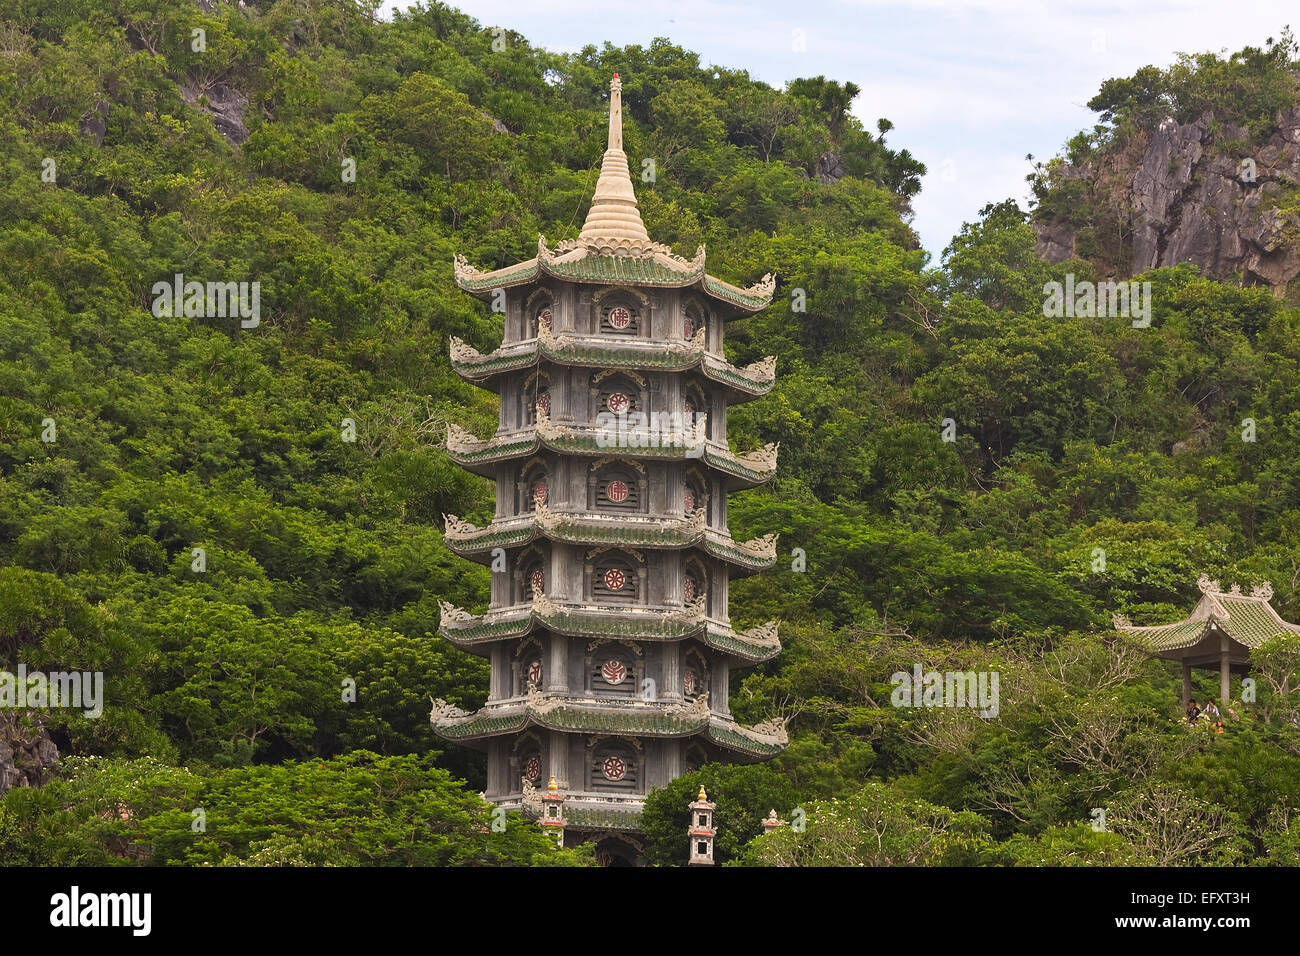 Tower, montagne de Marbre, le Vietnam, l'Asie Banque D'Images